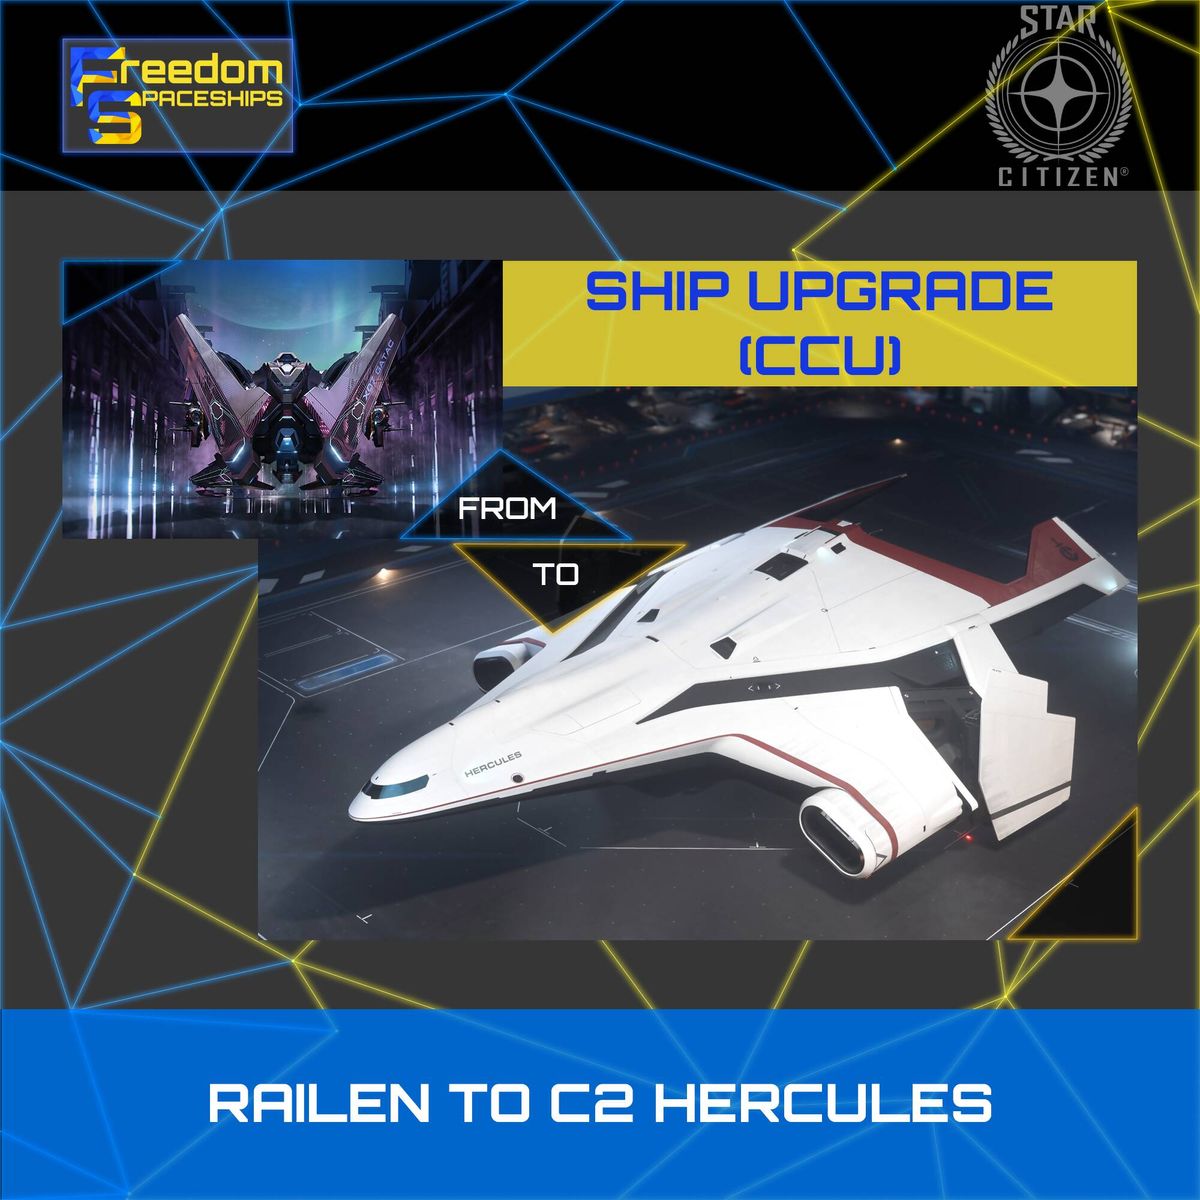 Upgrade - Railen to C2 Hercules